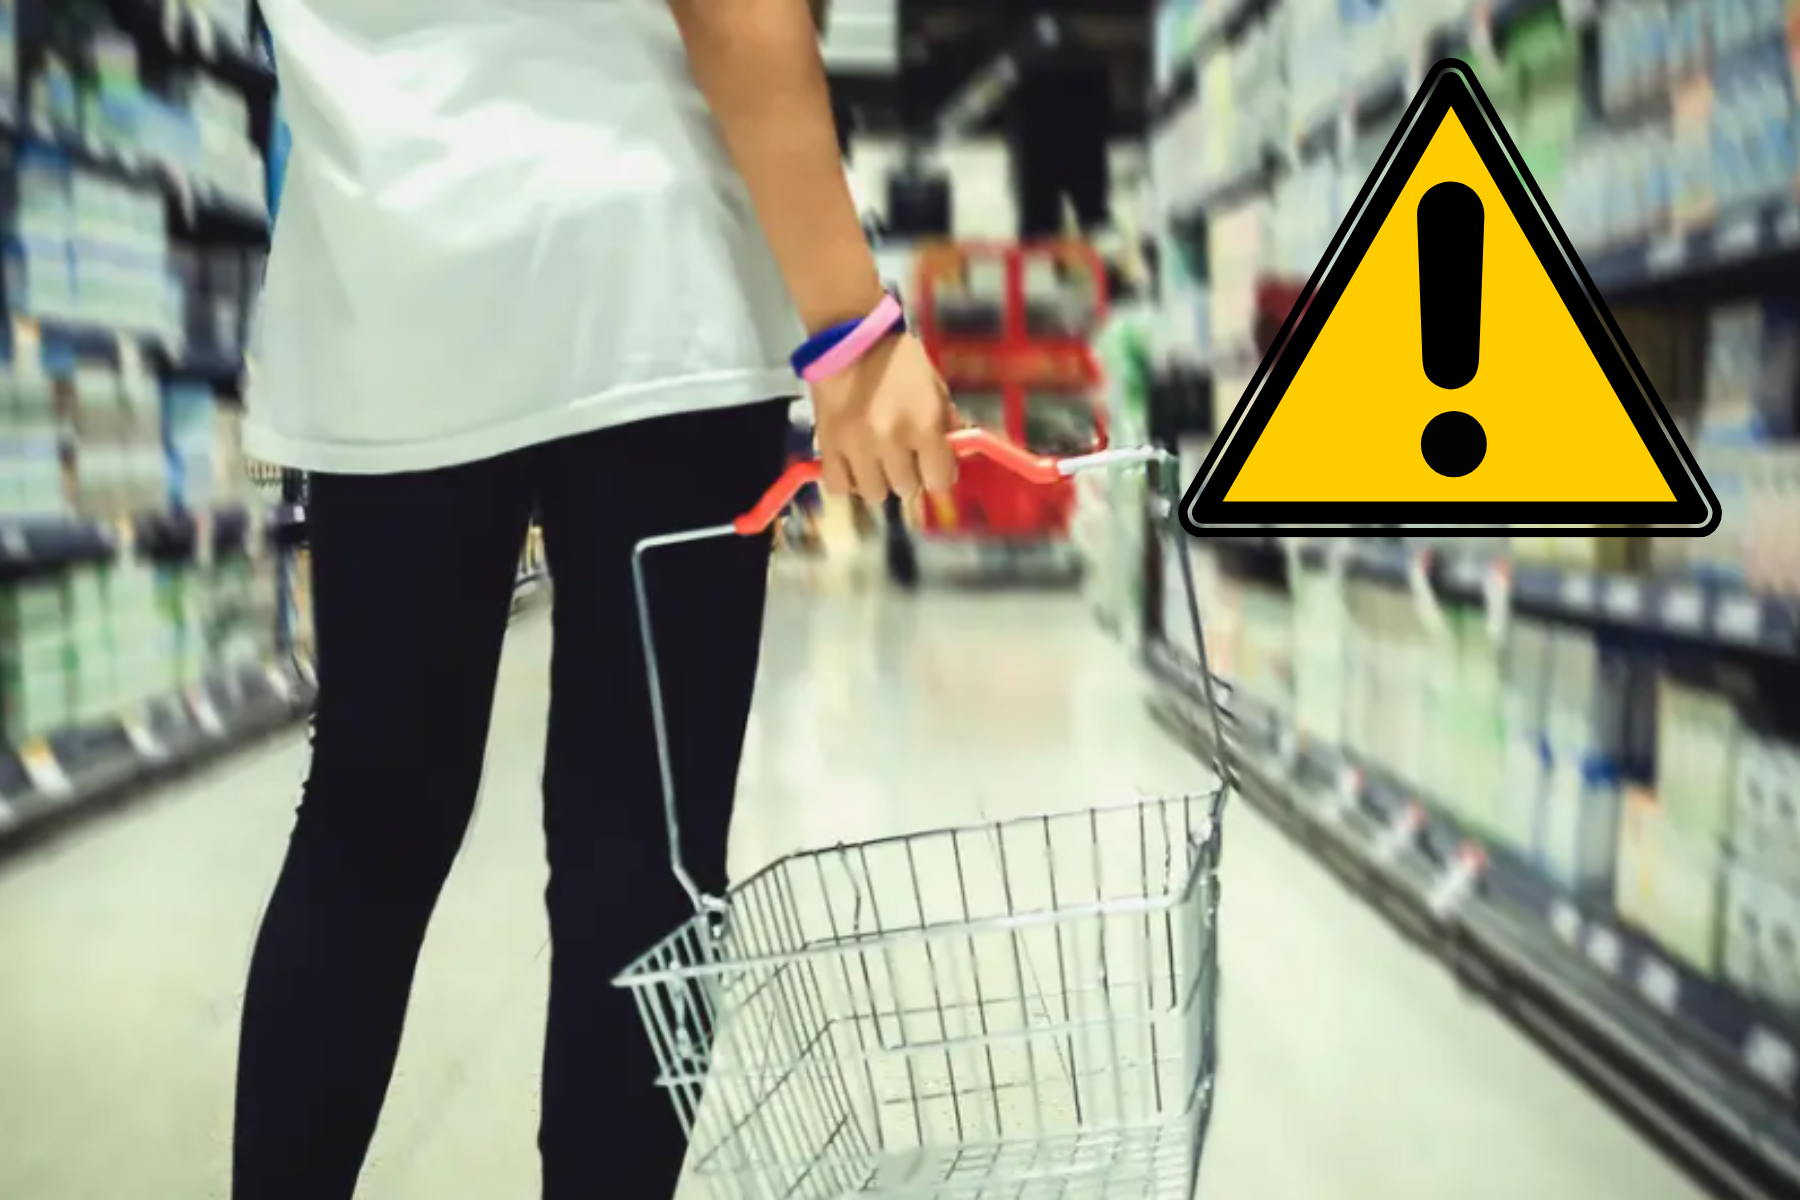 Urgent salmonella warning to anyone who shops at Asda, Tesco or Sainsbury's